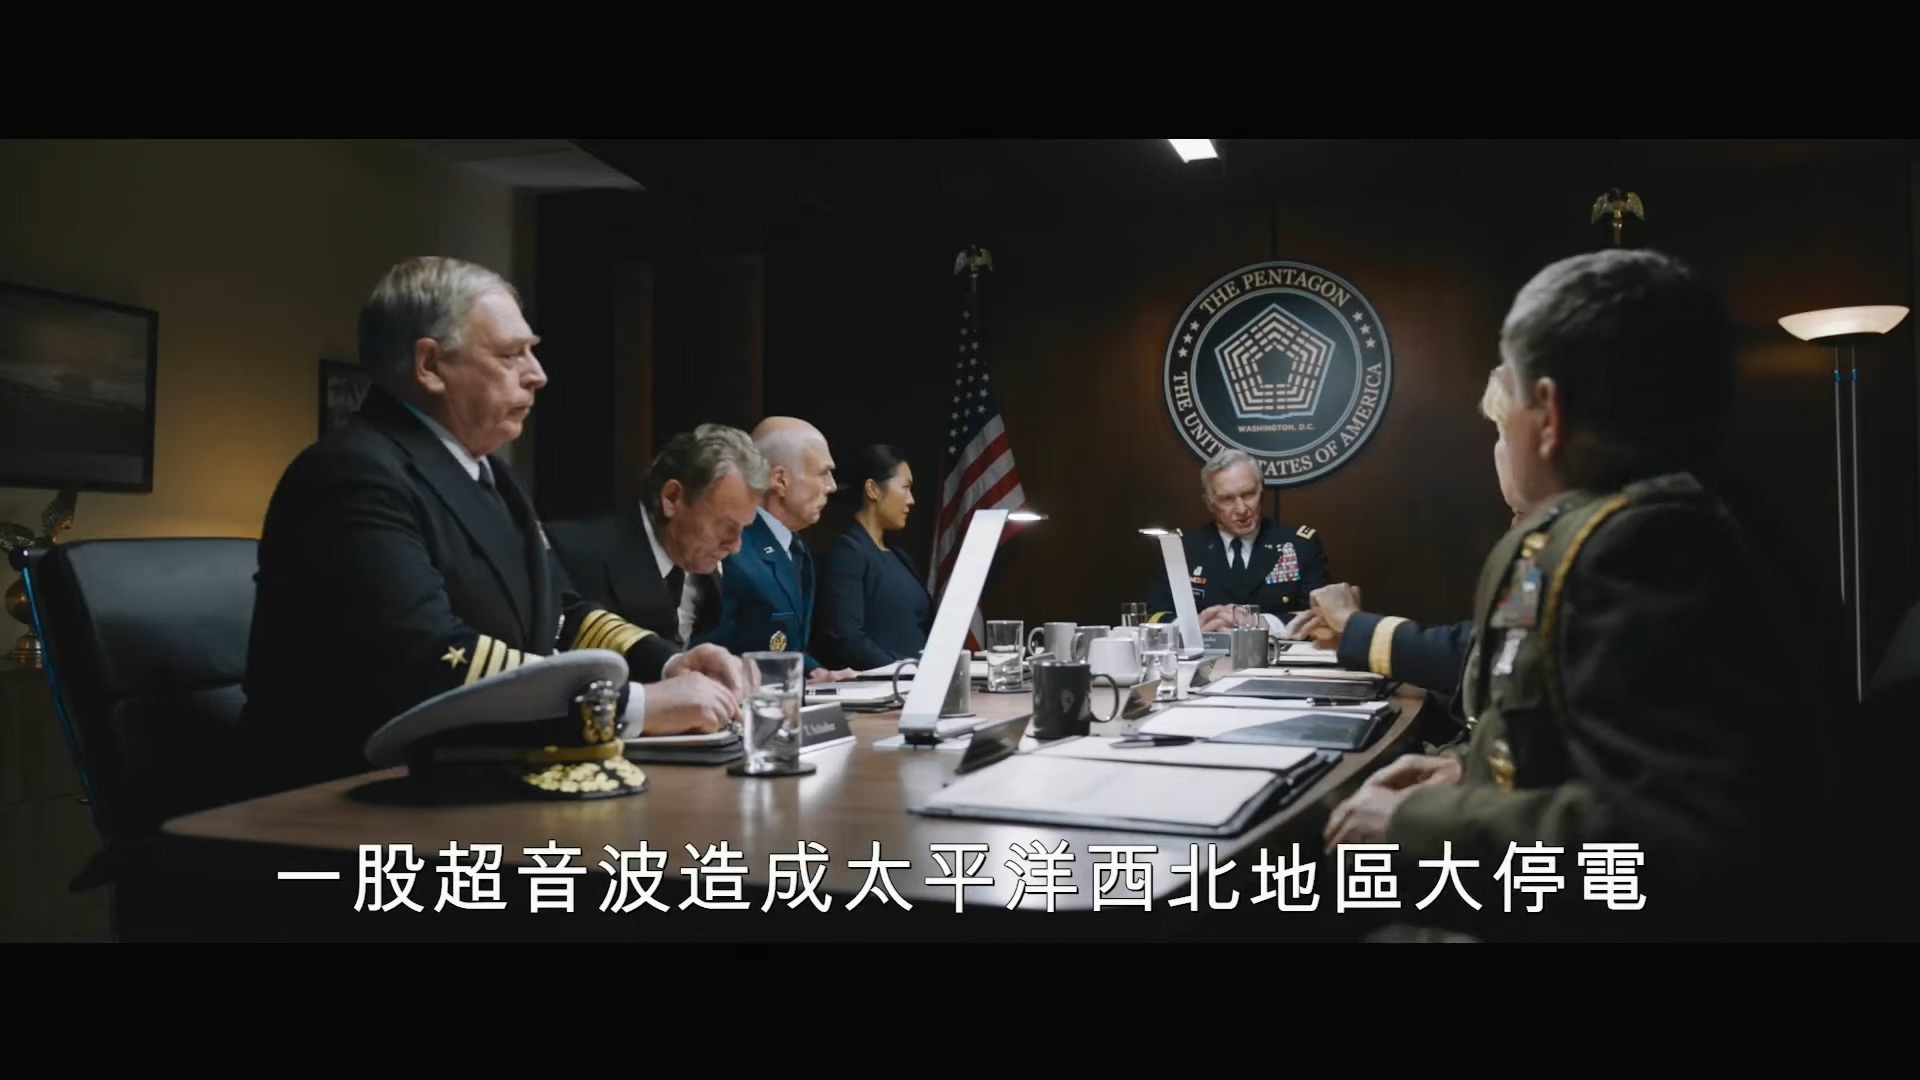 《刺猬索尼克》首曝中文预告 11月8日北美上映